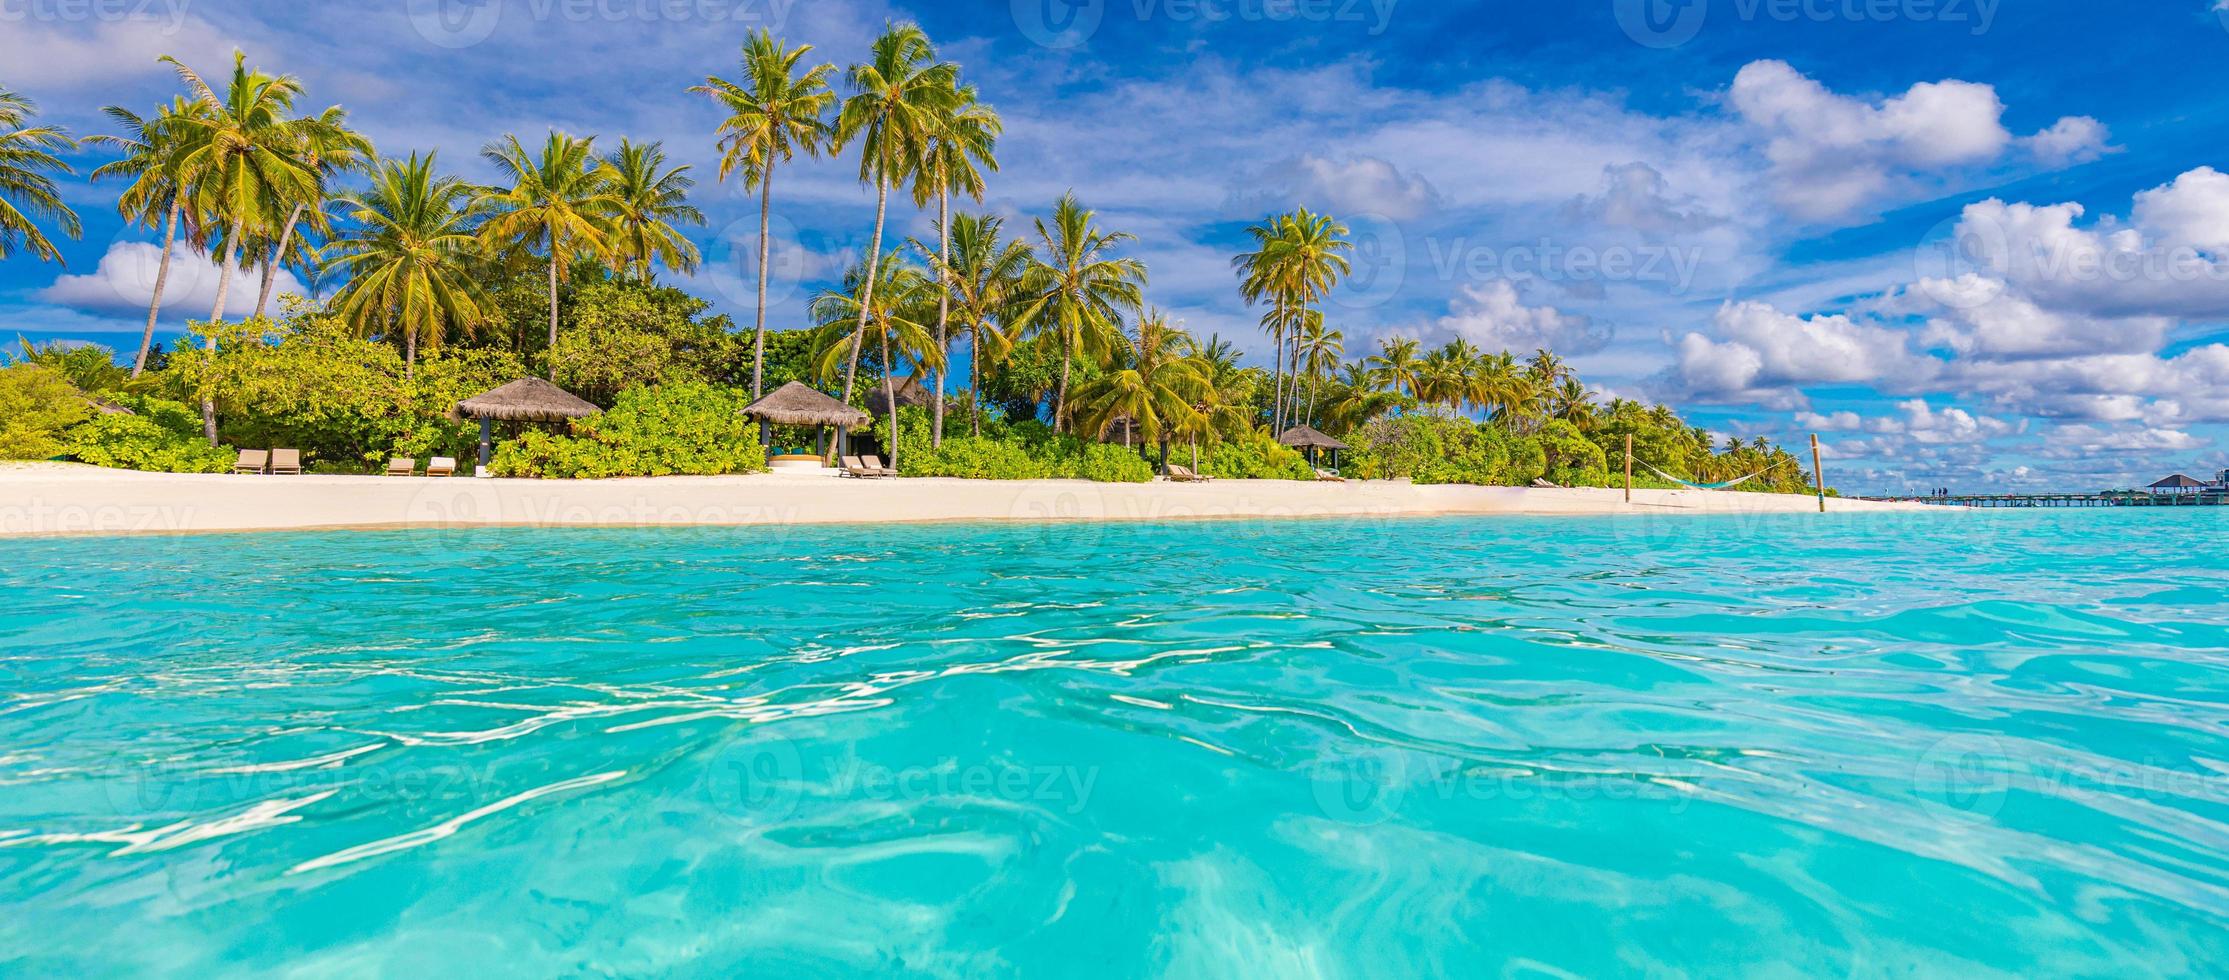 incredibile panorama della spiaggia delle Maldive. paesaggio marino tropicale della spiaggia, resort di lusso. destinazione di viaggio esotica, palme, sabbia bianca, acqua di mare per il concetto di vacanza estiva foto